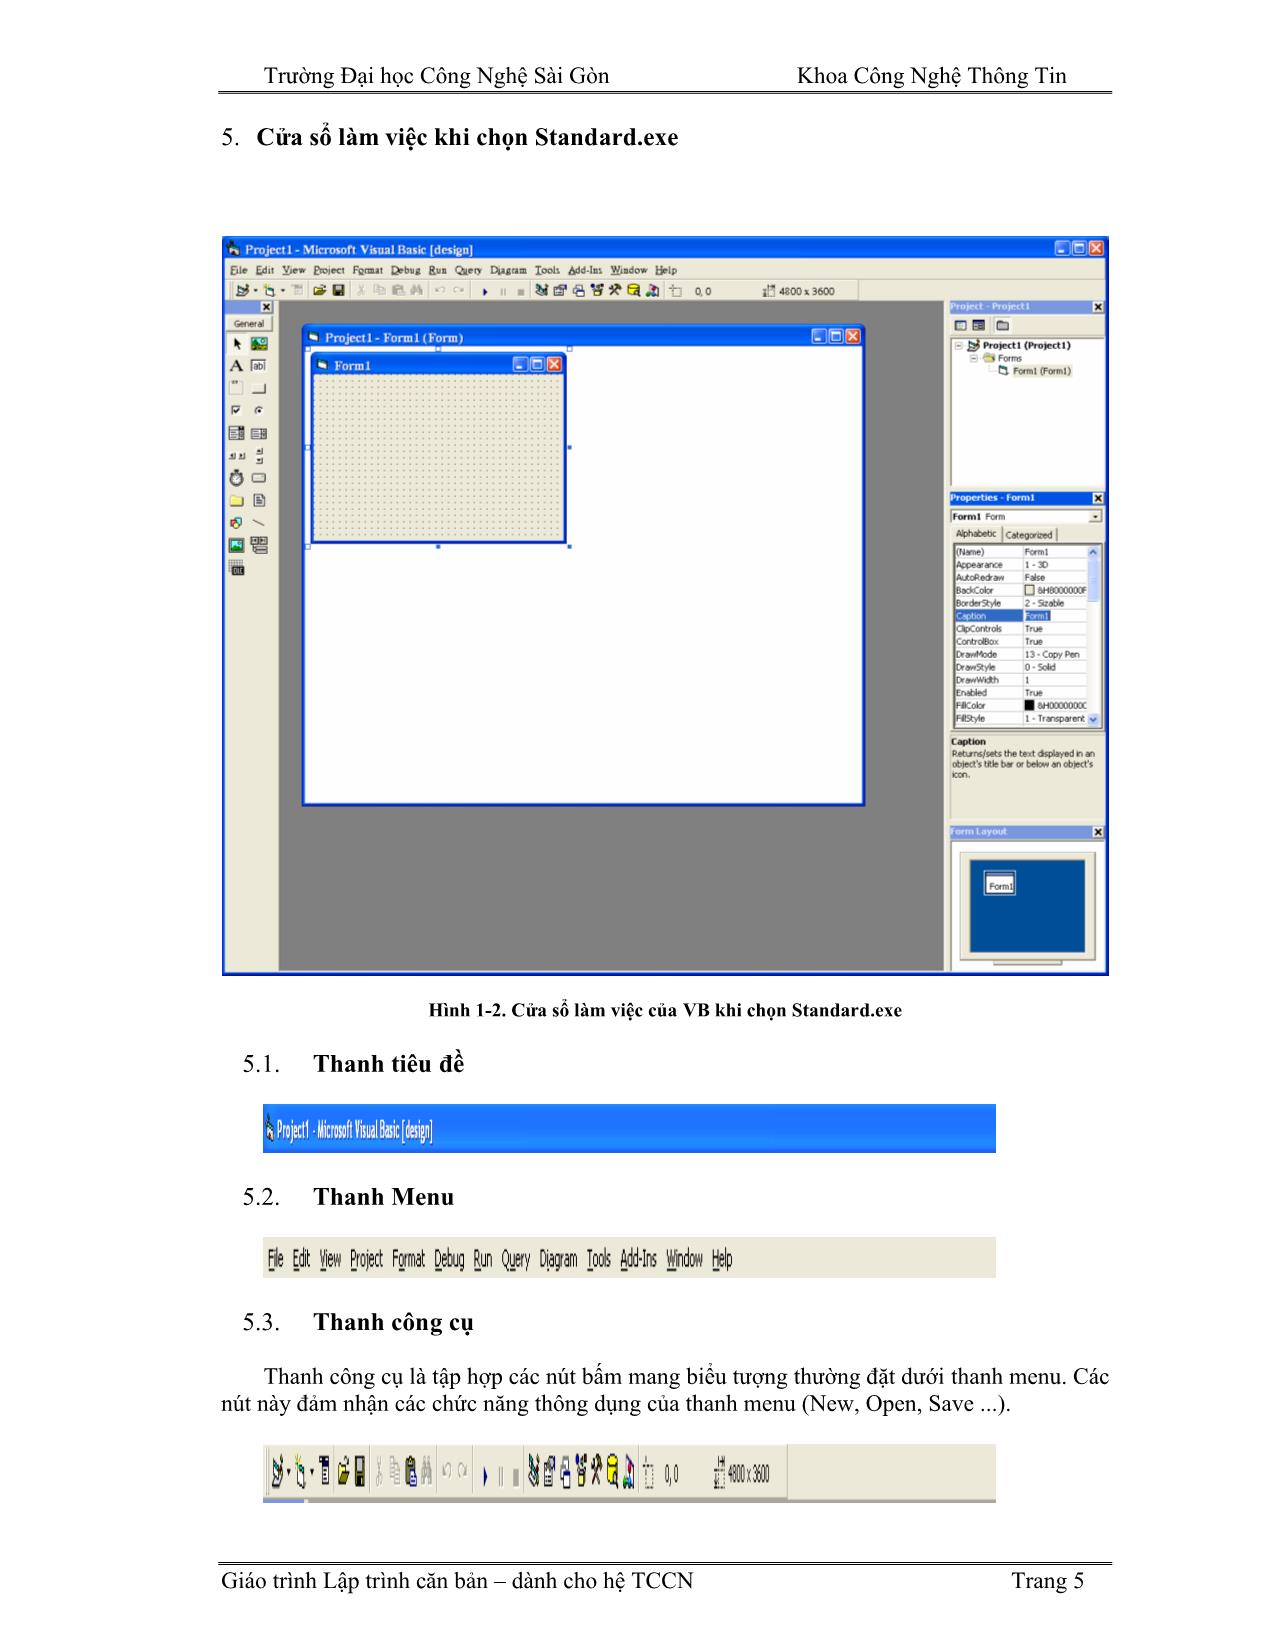 Giáo trình Lập trình căn bản Visual Basic (Phần 1) trang 5